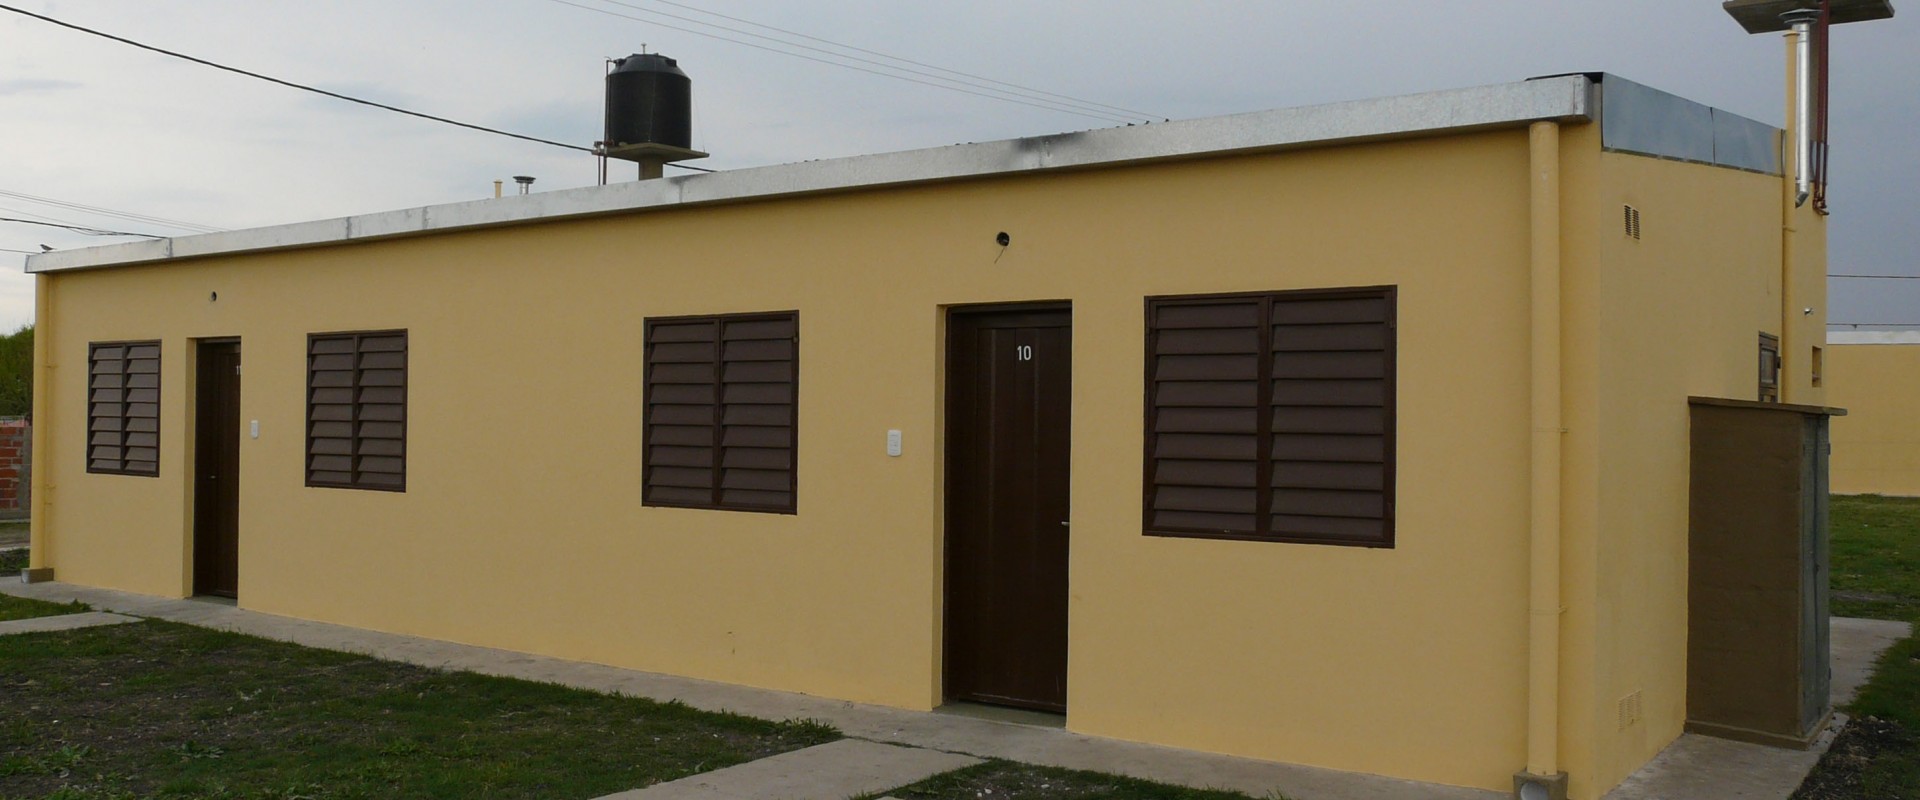 El gobierno sorteará 46 viviendas que tiene en ejecución en Chajarí